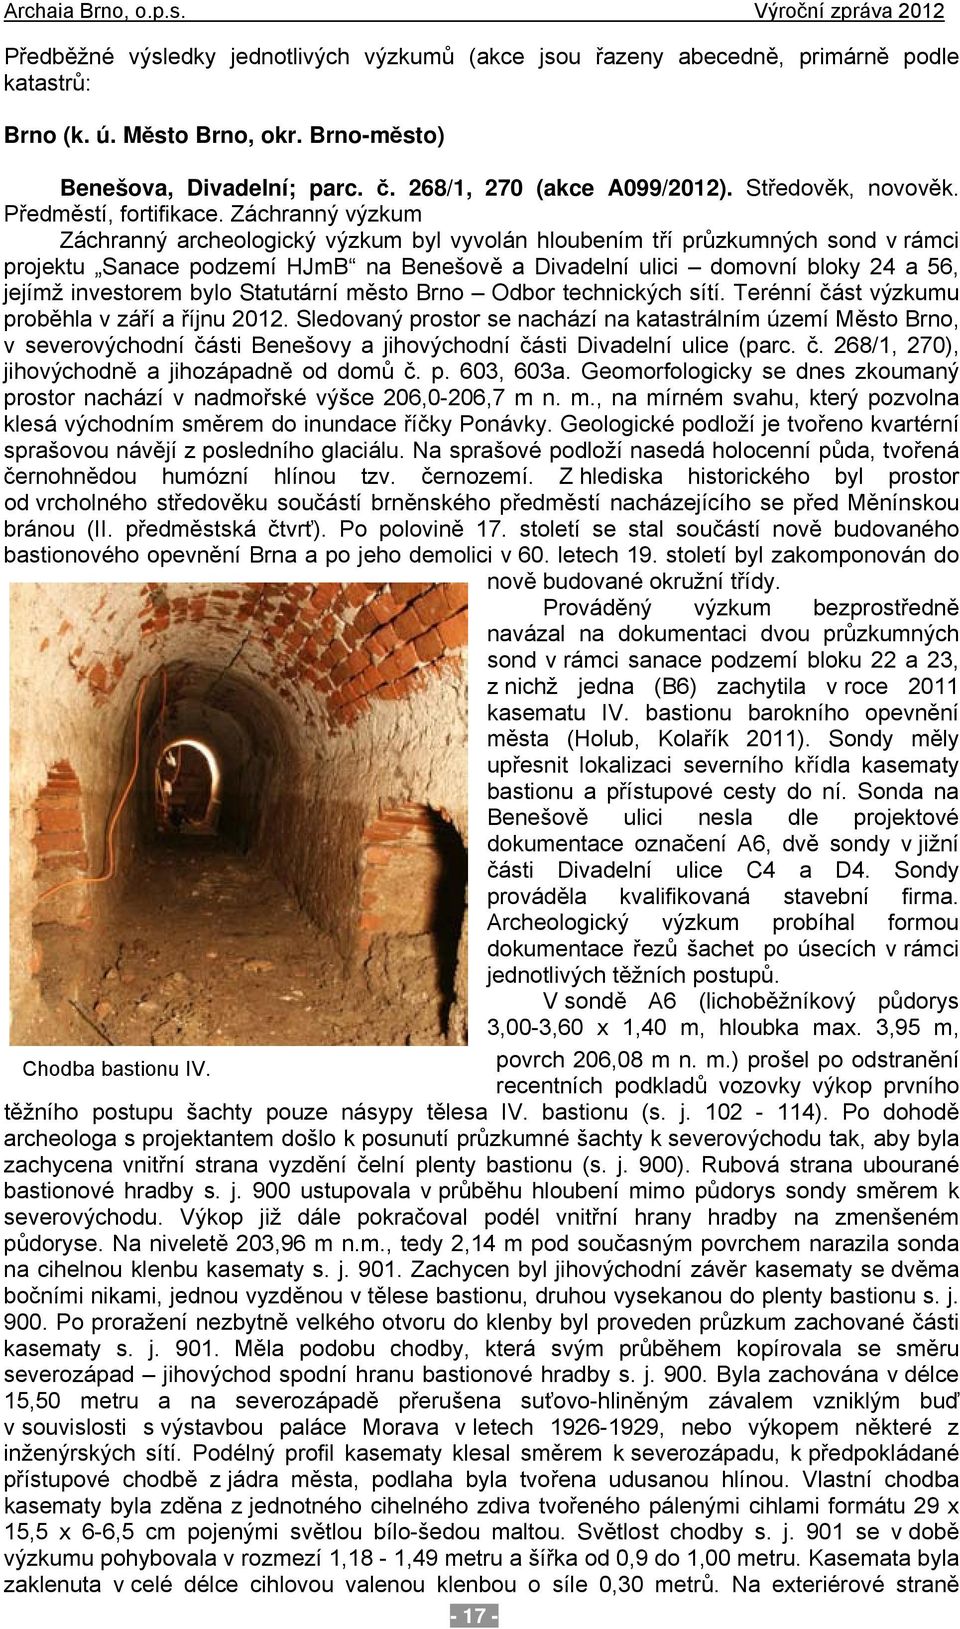 Záchranný výzkum Záchranný archeologický výzkum byl vyvolán hloubením tří průzkumných sond v rámci projektu Sanace podzemí HJmB na Benešově a Divadelní ulici domovní bloky 24 a 56, jejímž investorem